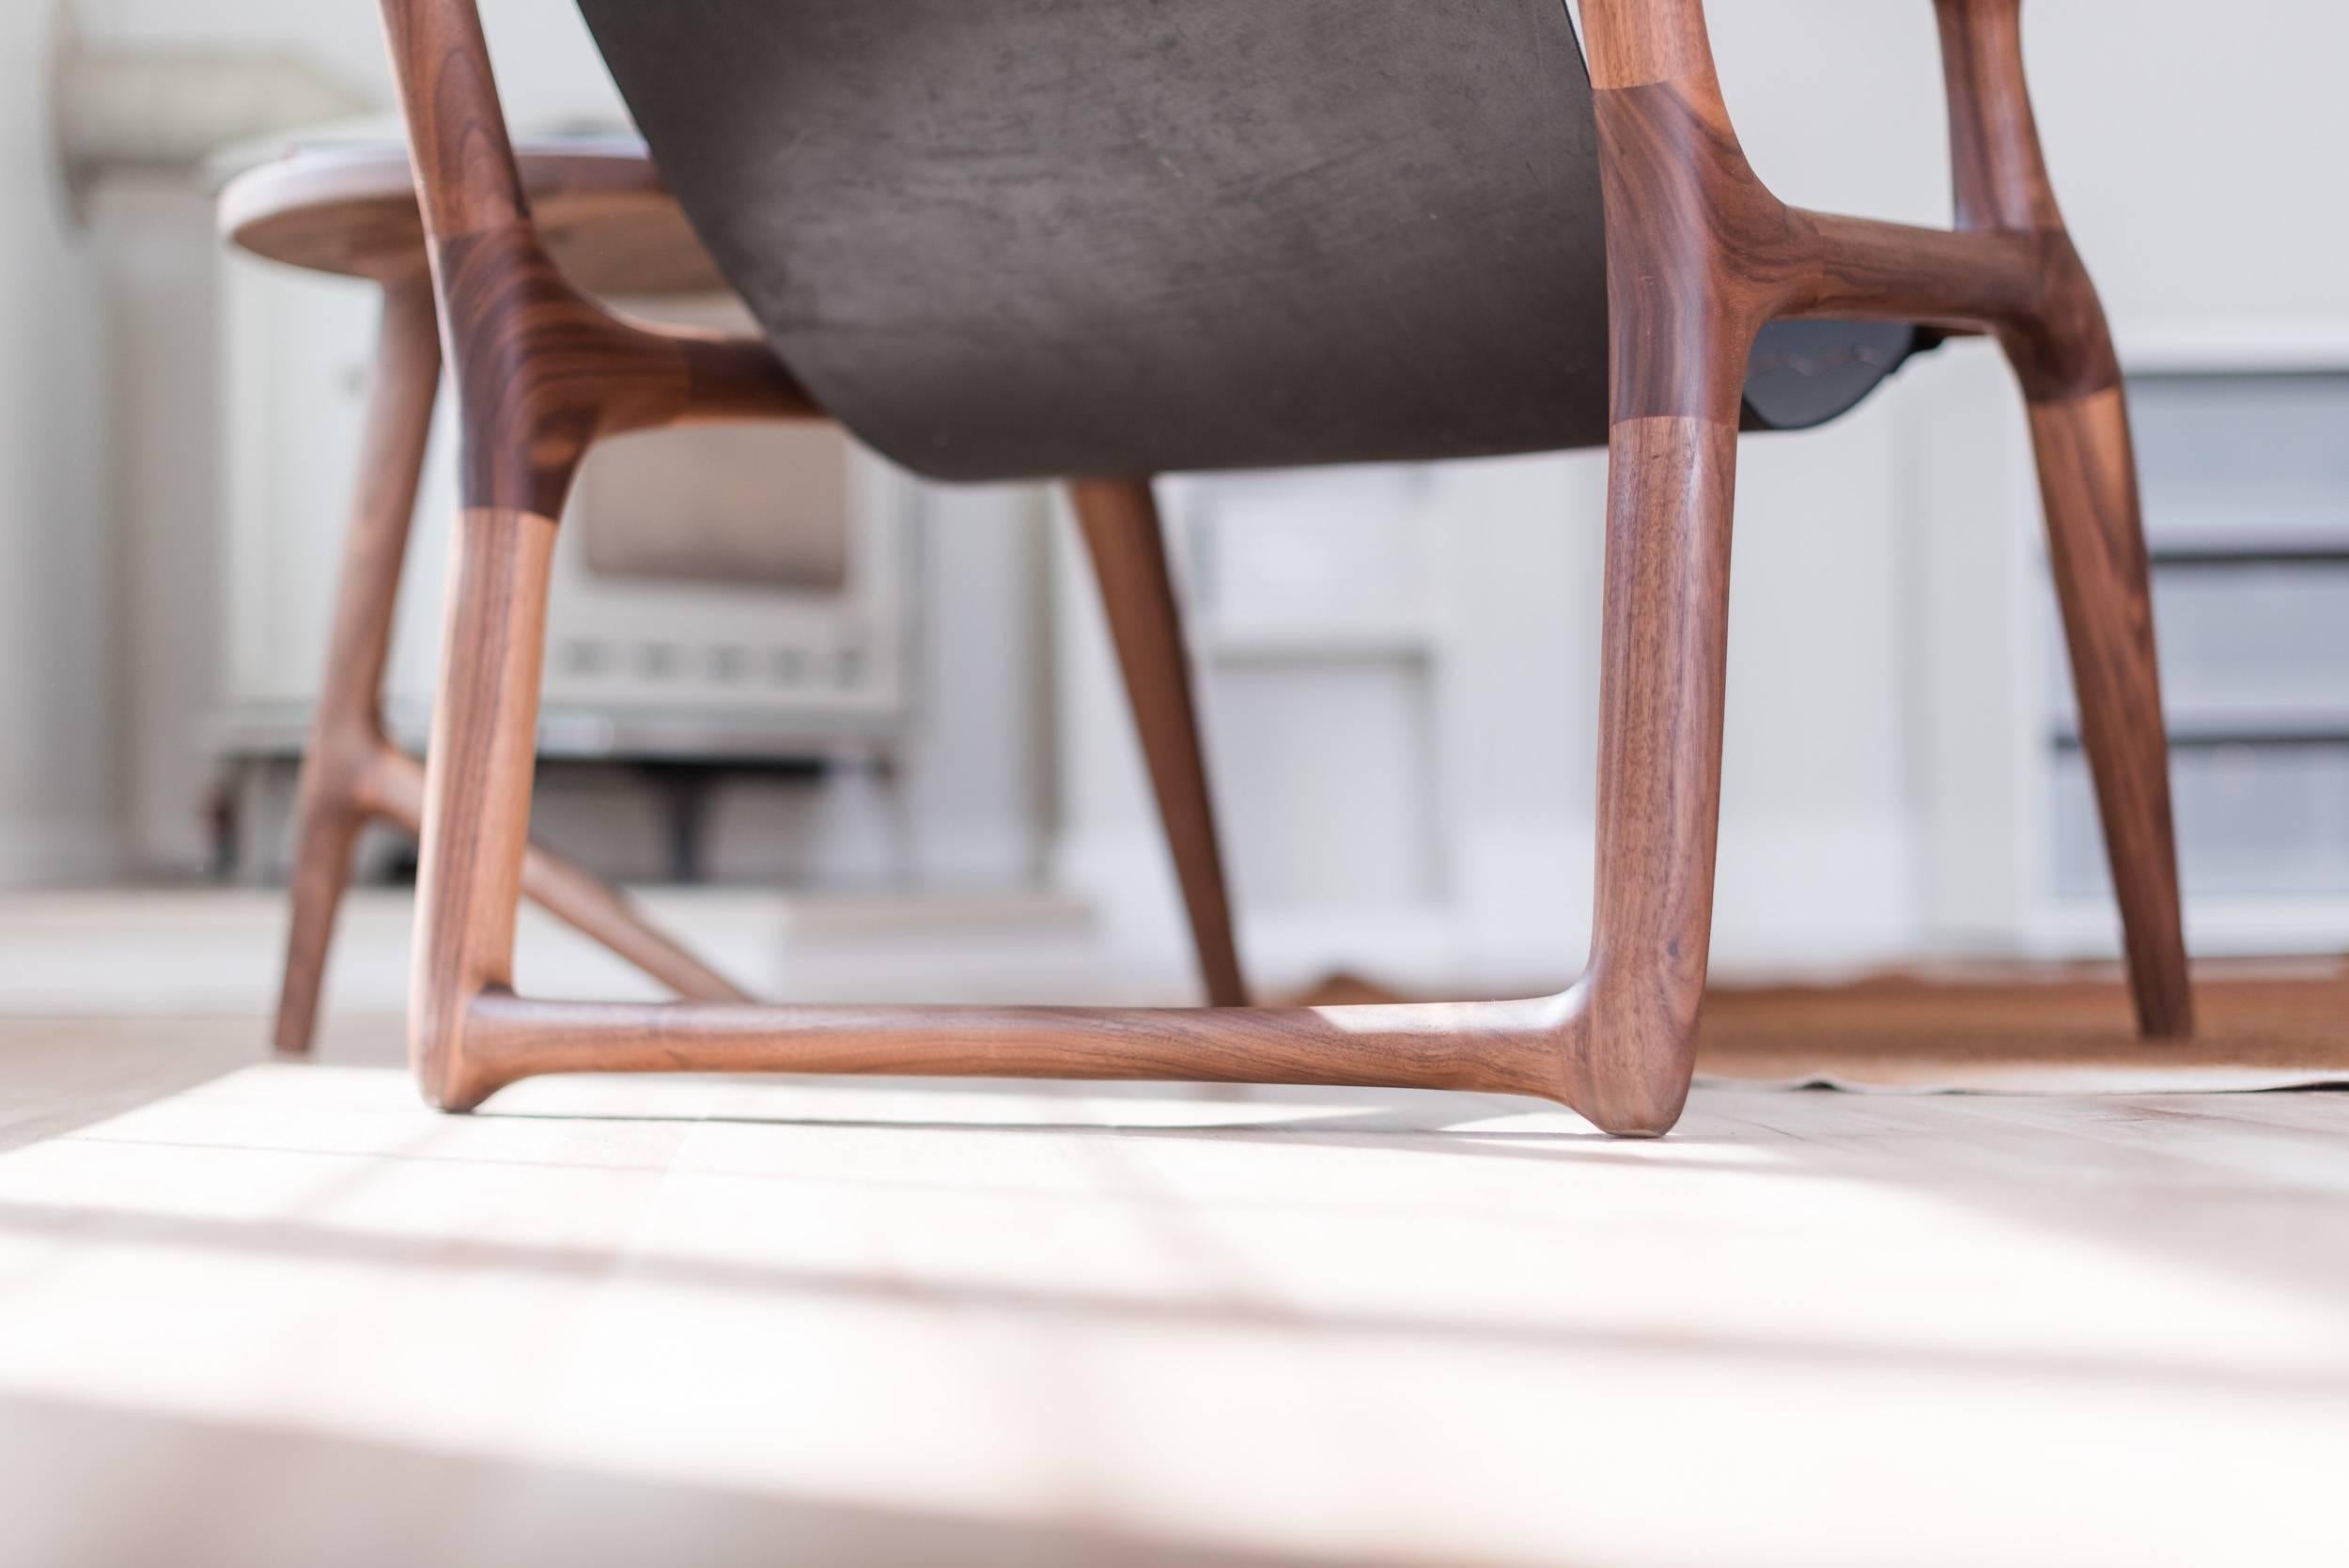 Cette pièce primée est la première chaise conçue par Fernweh Woodworking. Le cadre est façonné à la main à partir de noyer américain de haute qualité, offrant de riches tons bruns chauds avec une menuiserie élégante inspirée par le design danois,